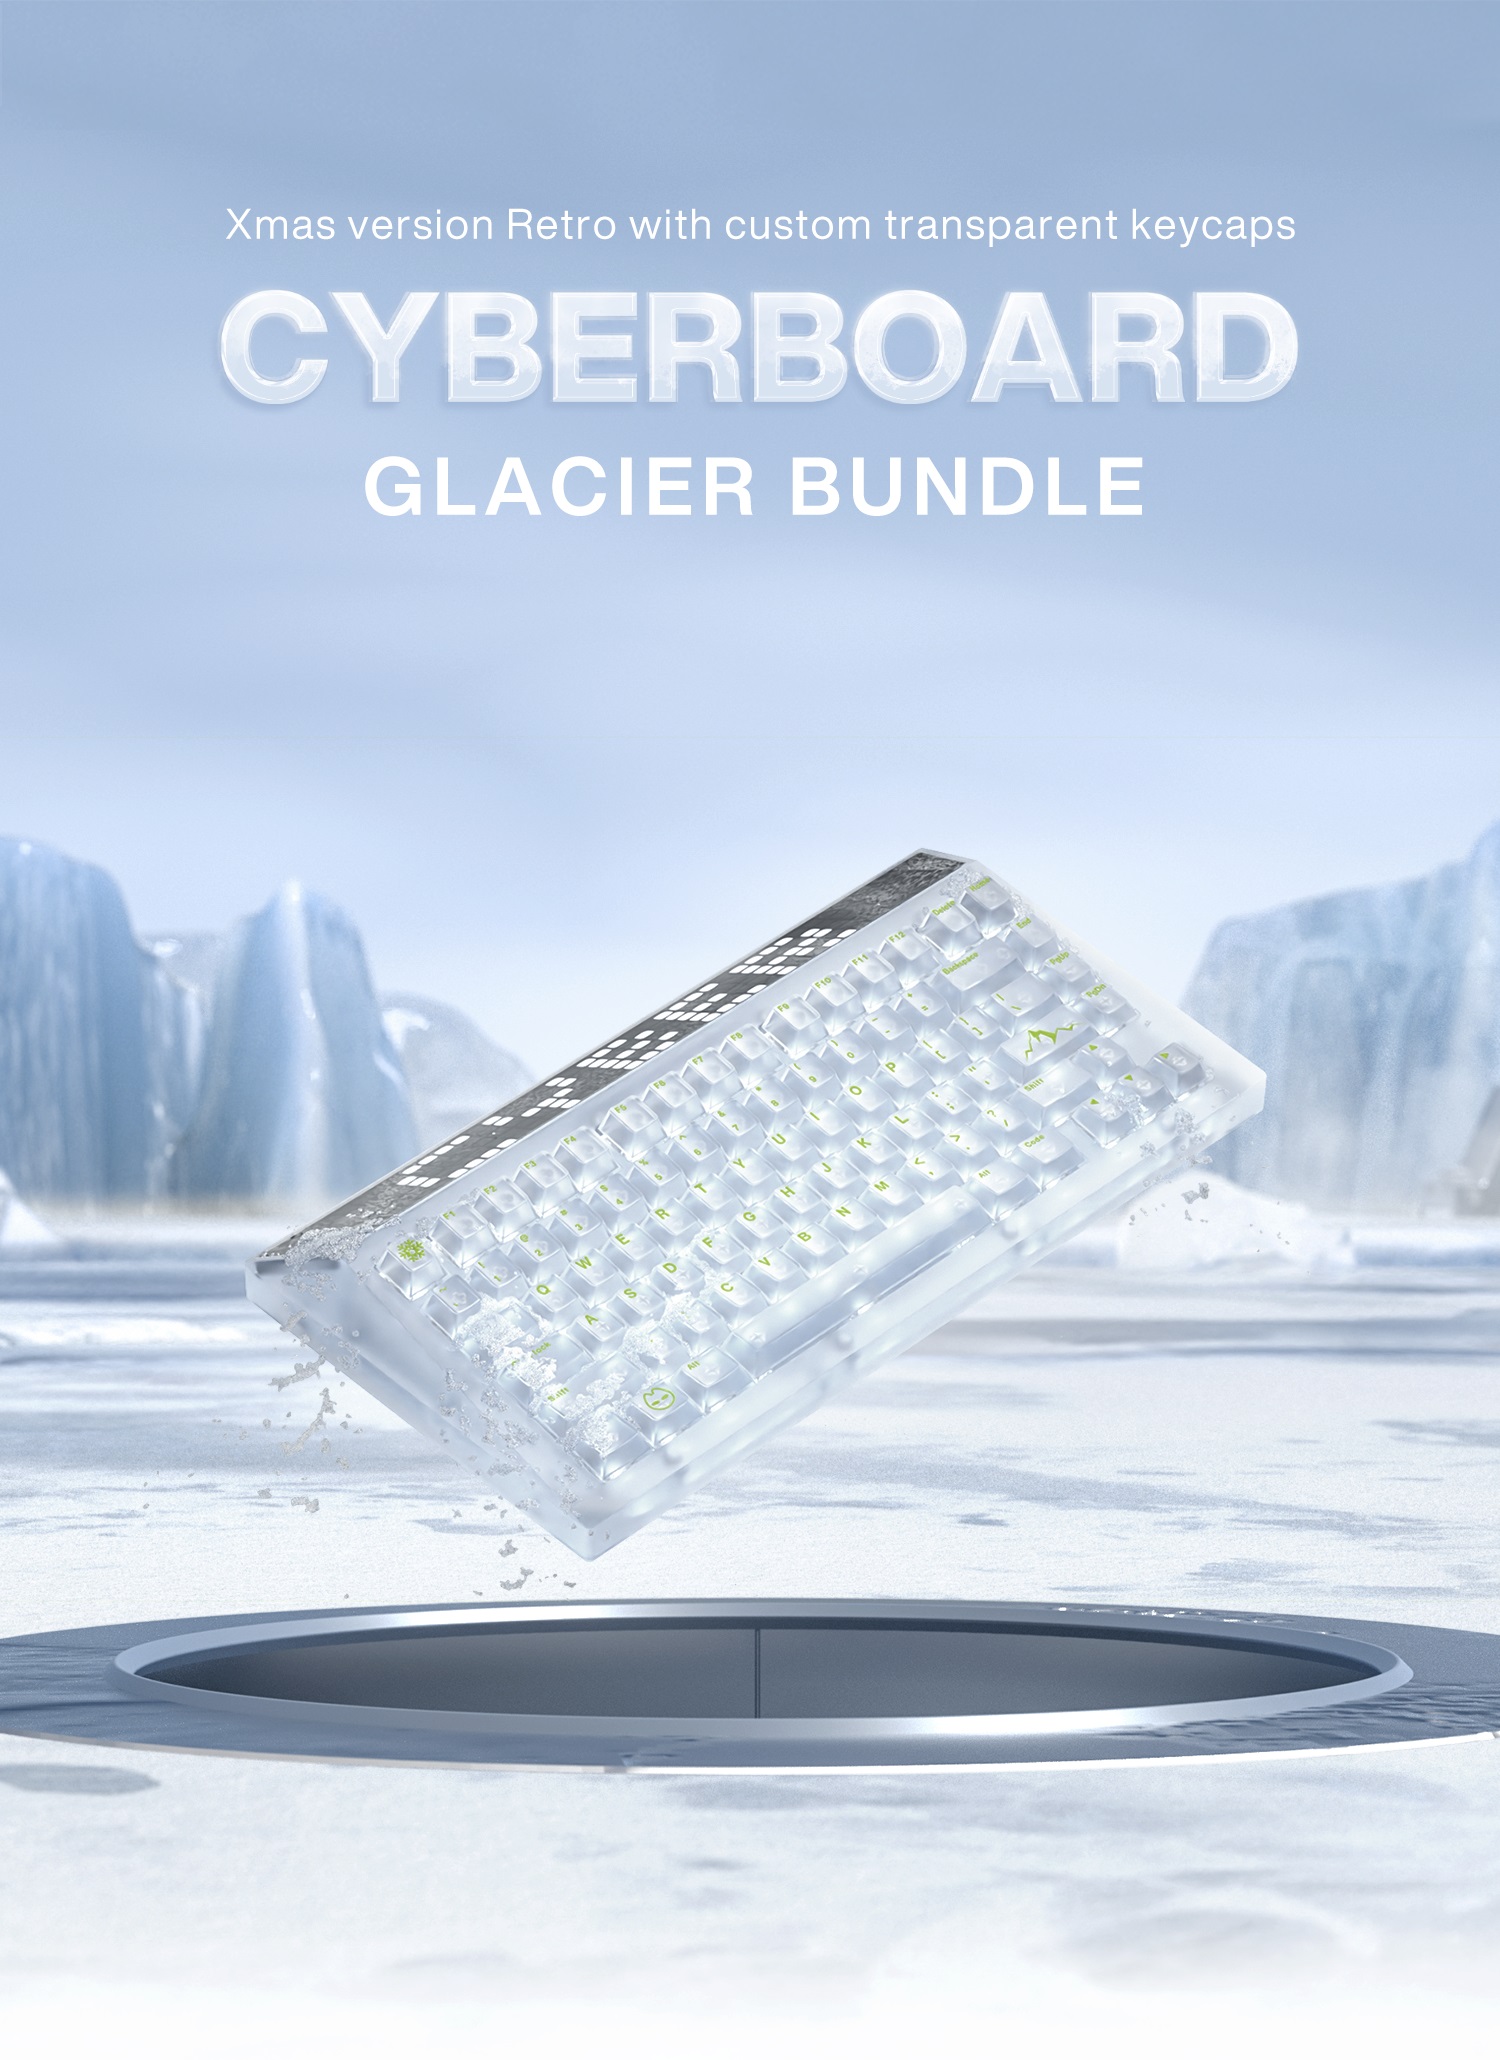 CYBERBOARD Glacier Bundle